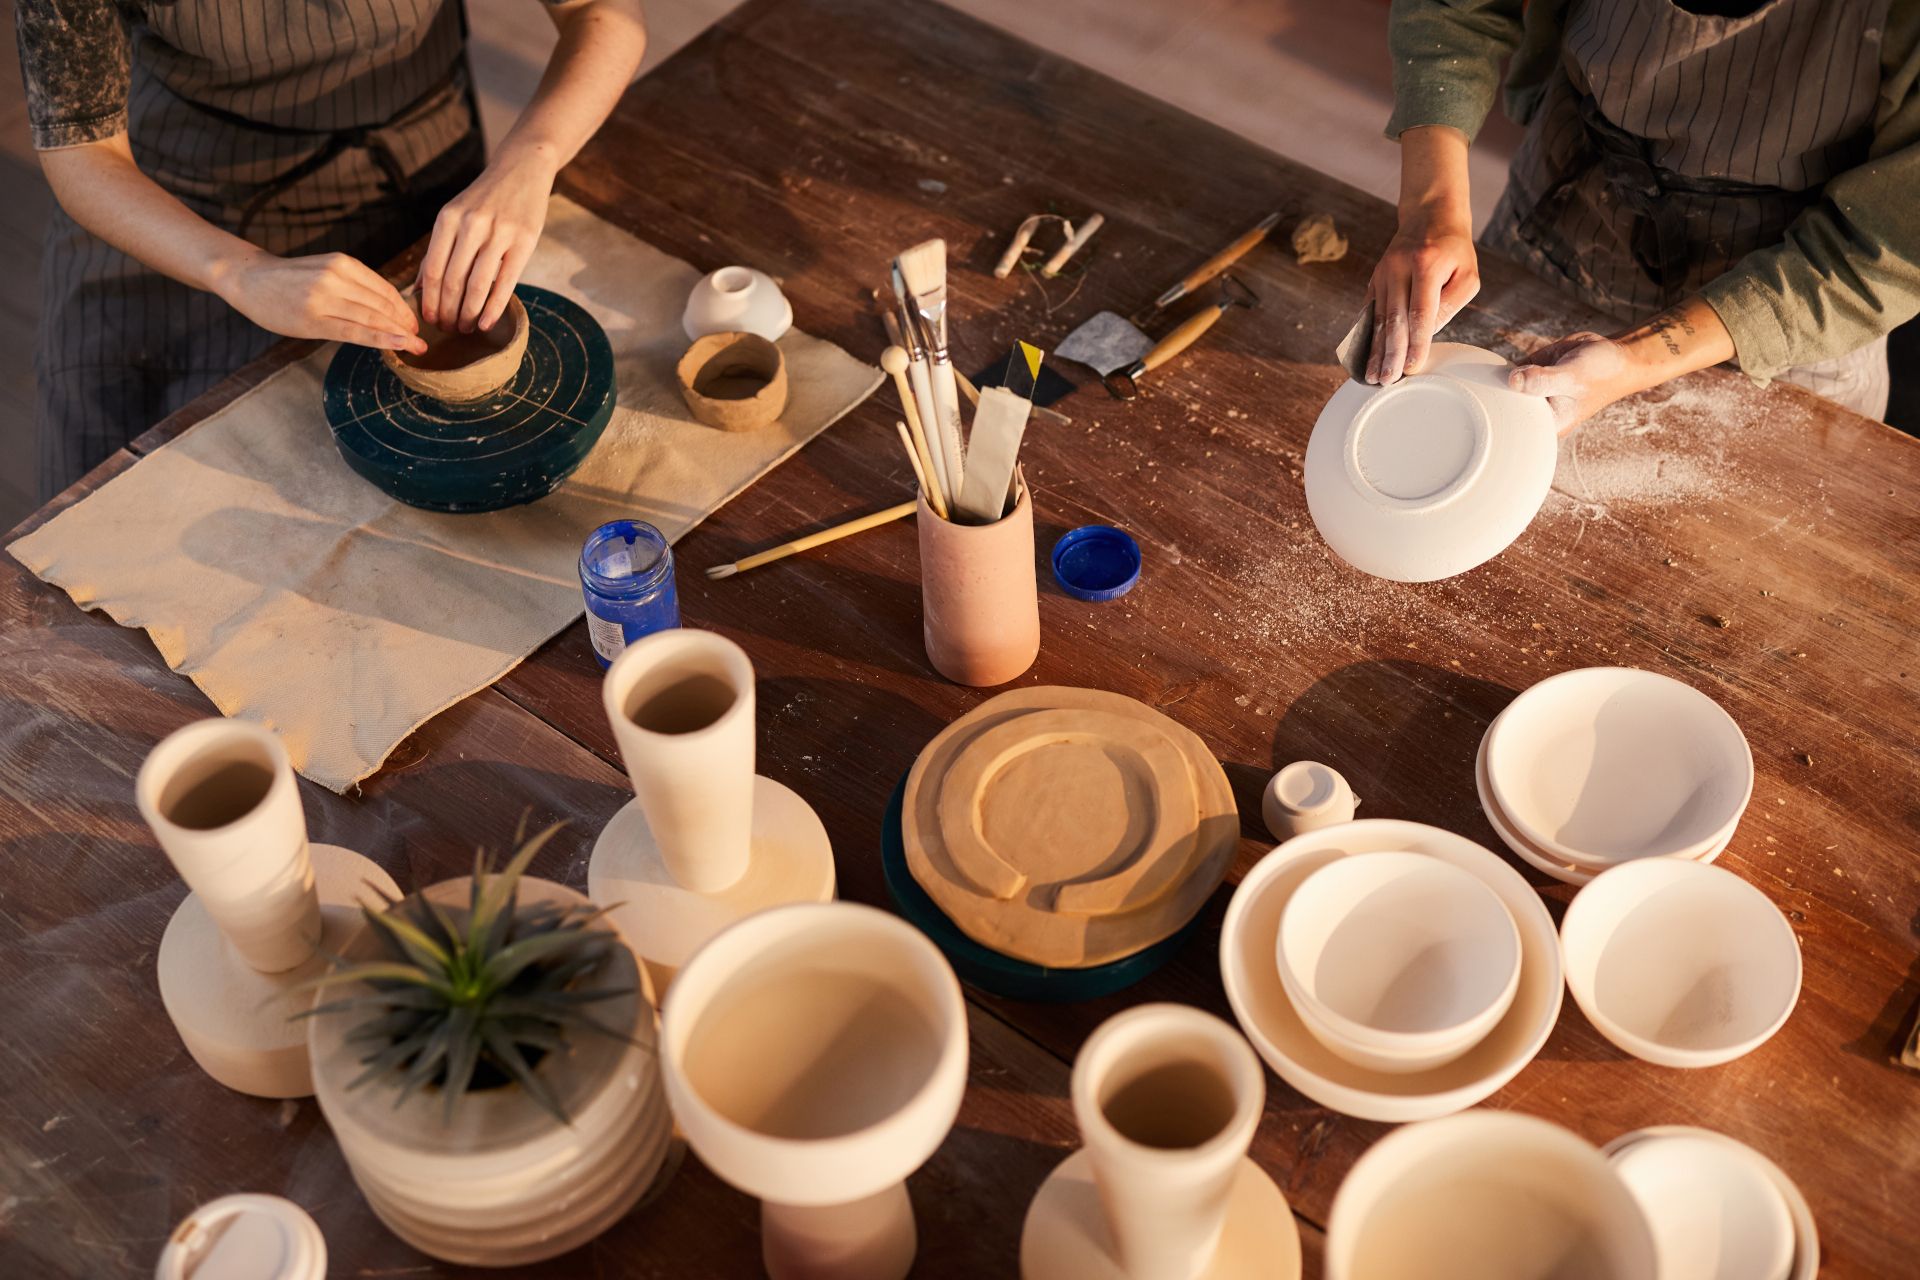 artigiani che lavorano maioliche vasi piatti della collezione Arte Sacra ceramica di De Fabritiis a Castelli di Teramo in Abruzzo